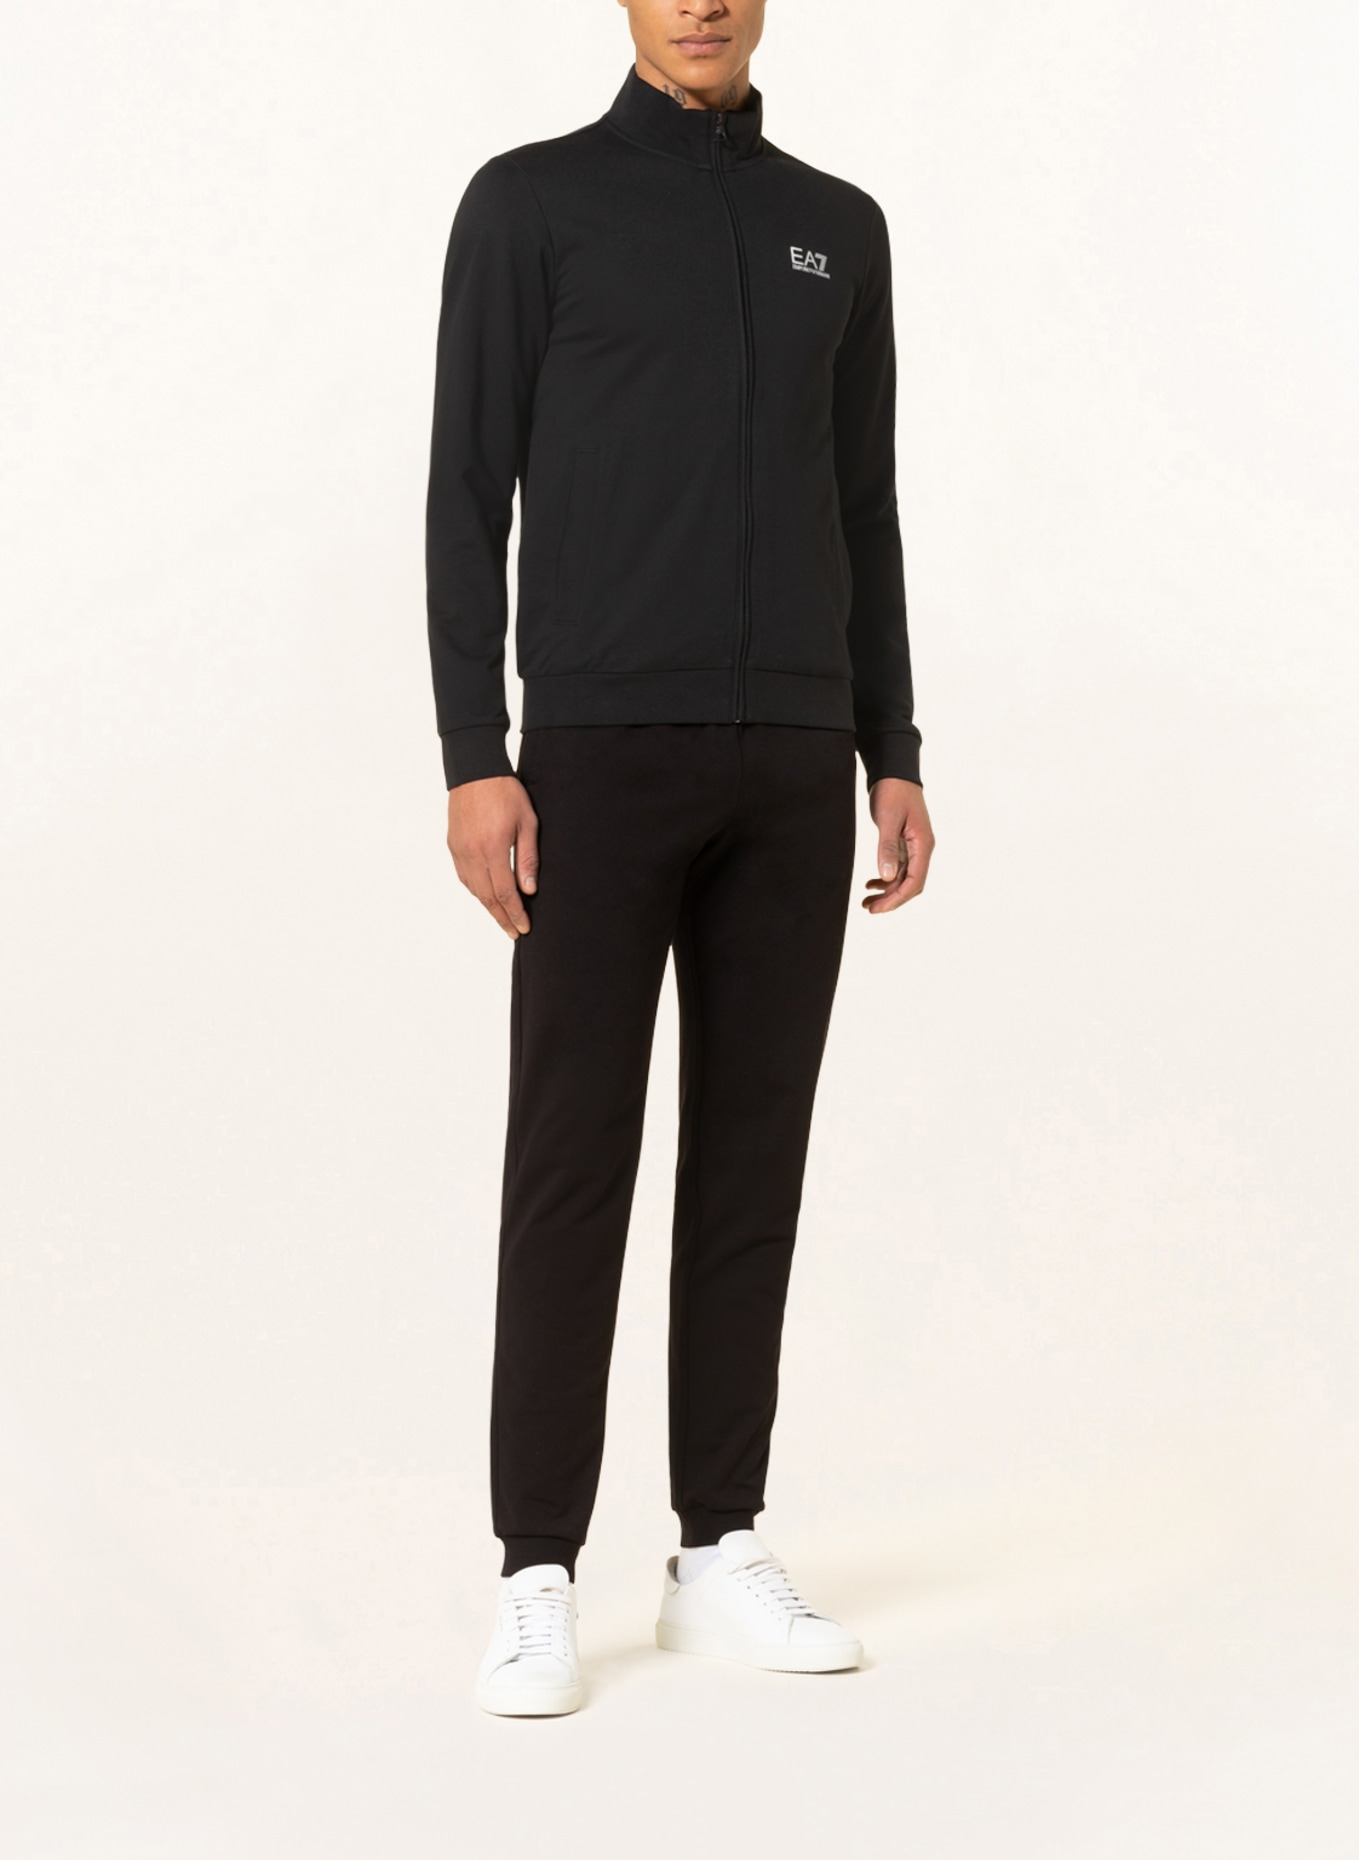 EA7 EMPORIO ARMANI Sweat jacket, Color: BLACK (Image 2)